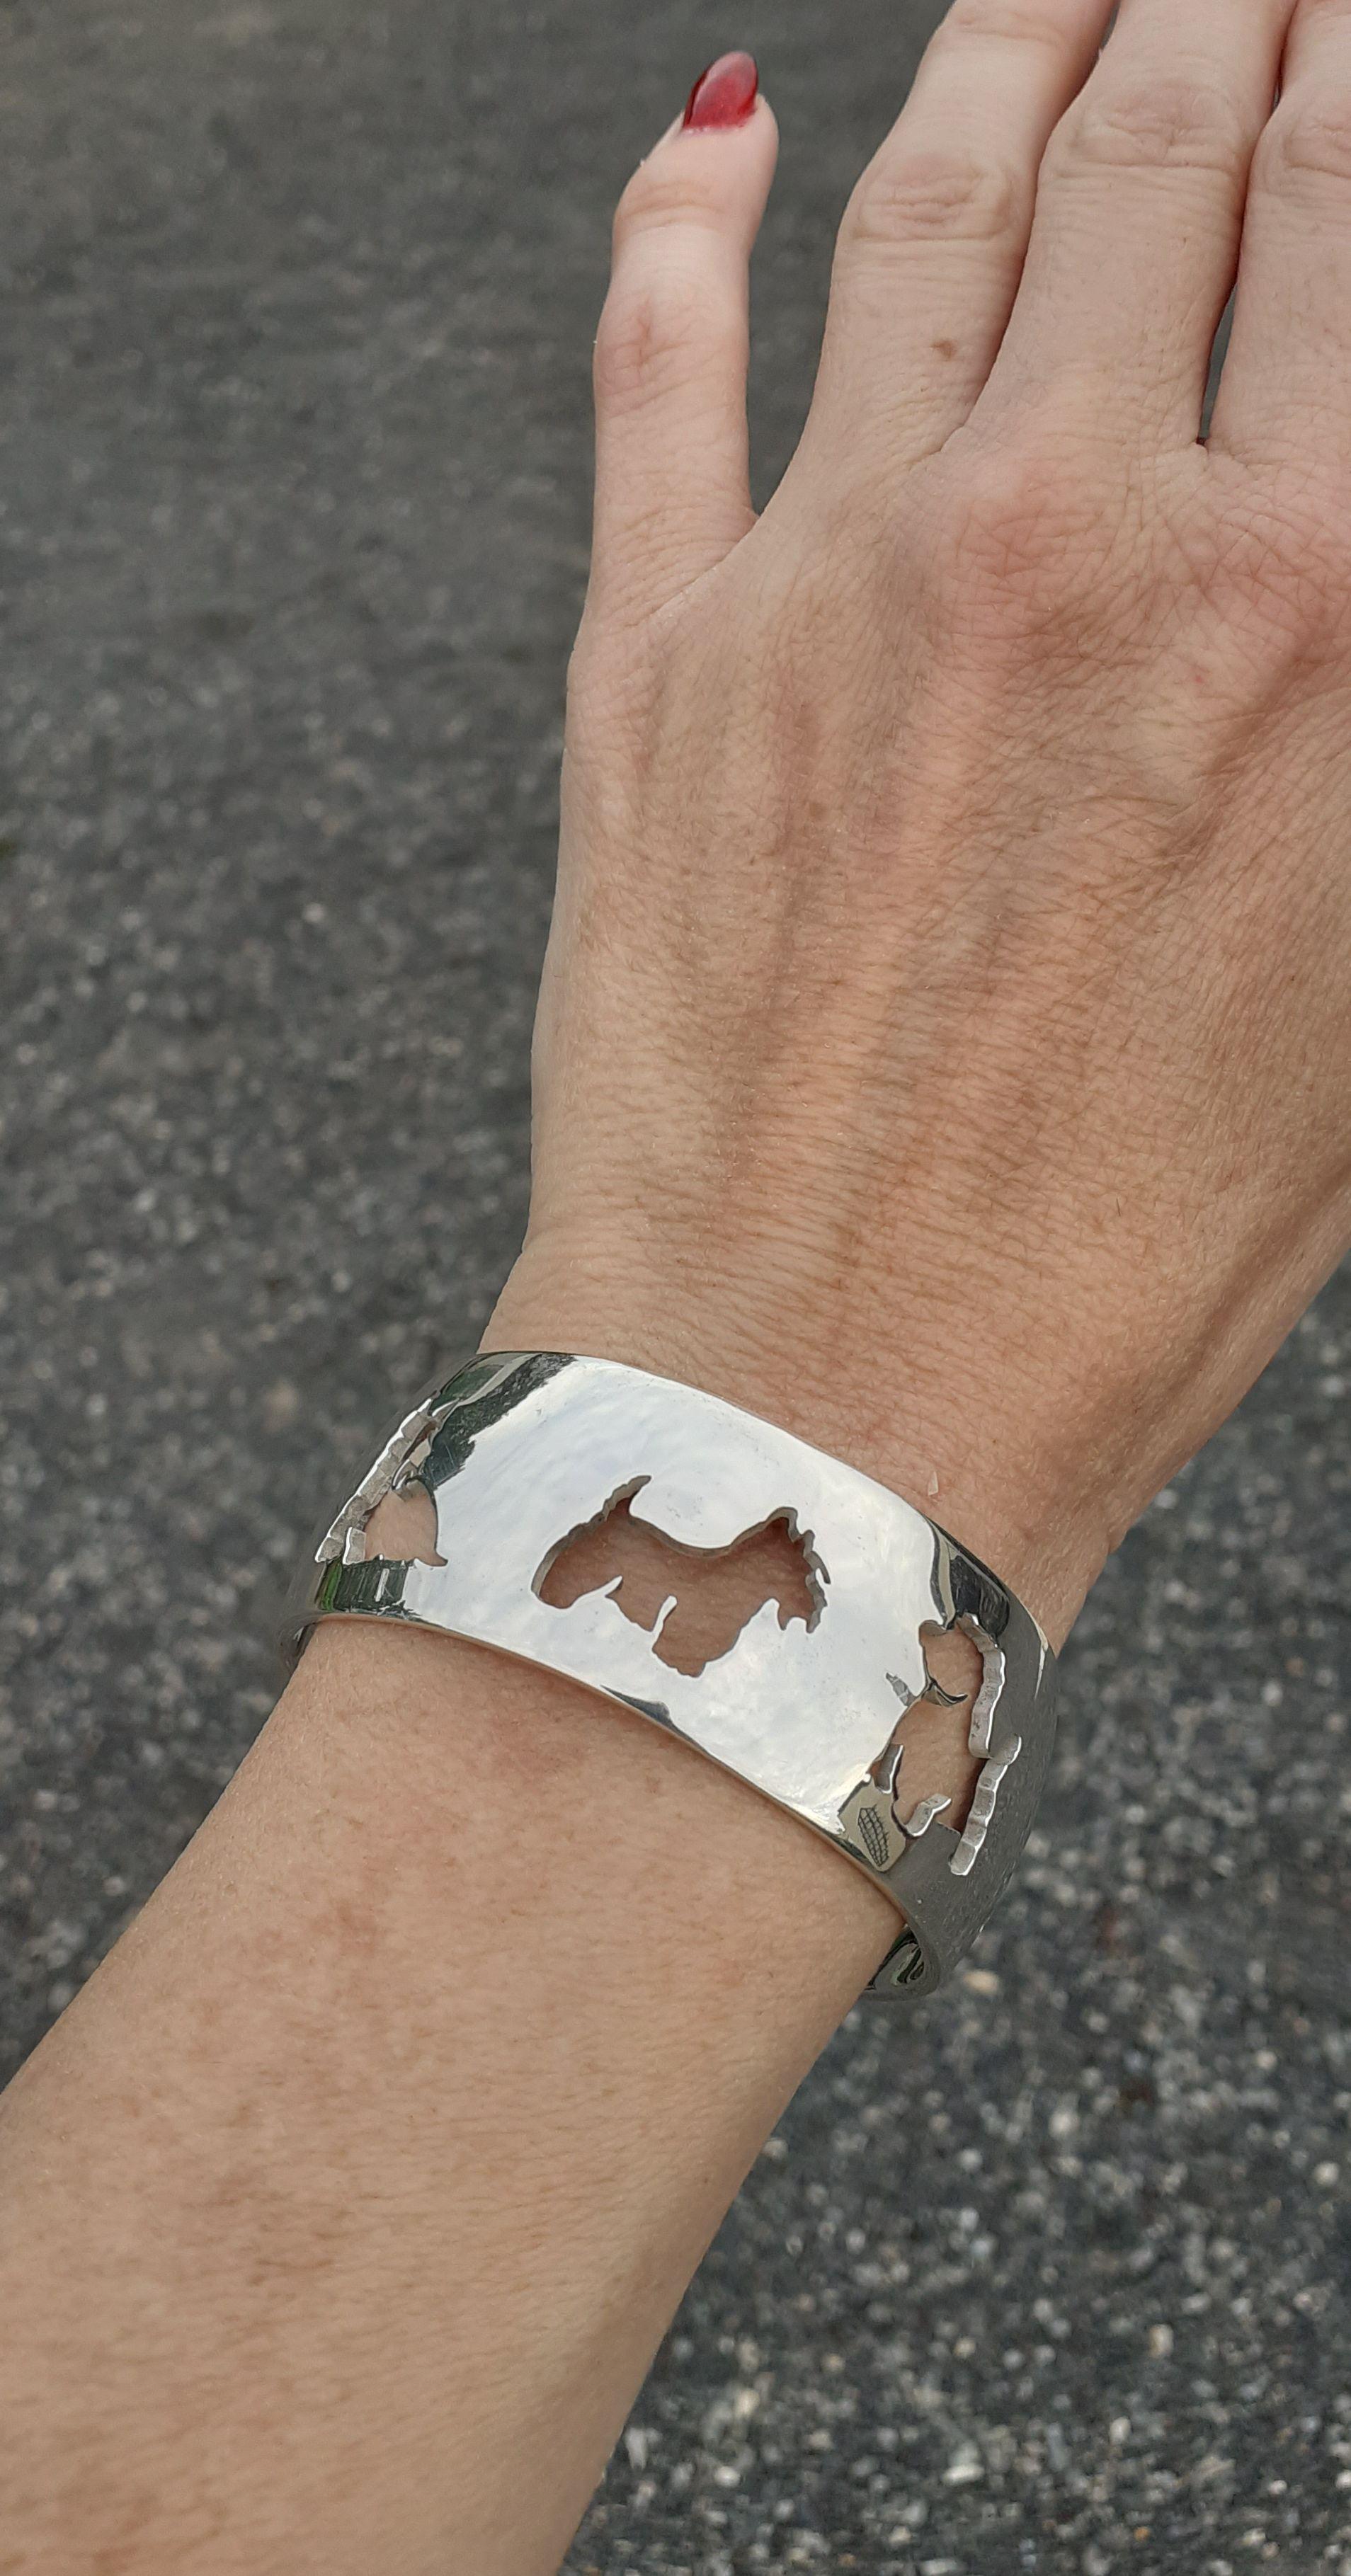 Rare et super mignon Bracelet Authentique Hermès

Bracelet ajouré avec 5 formes différentes de west highland white terrier

En argent 

Coloris : argenté

